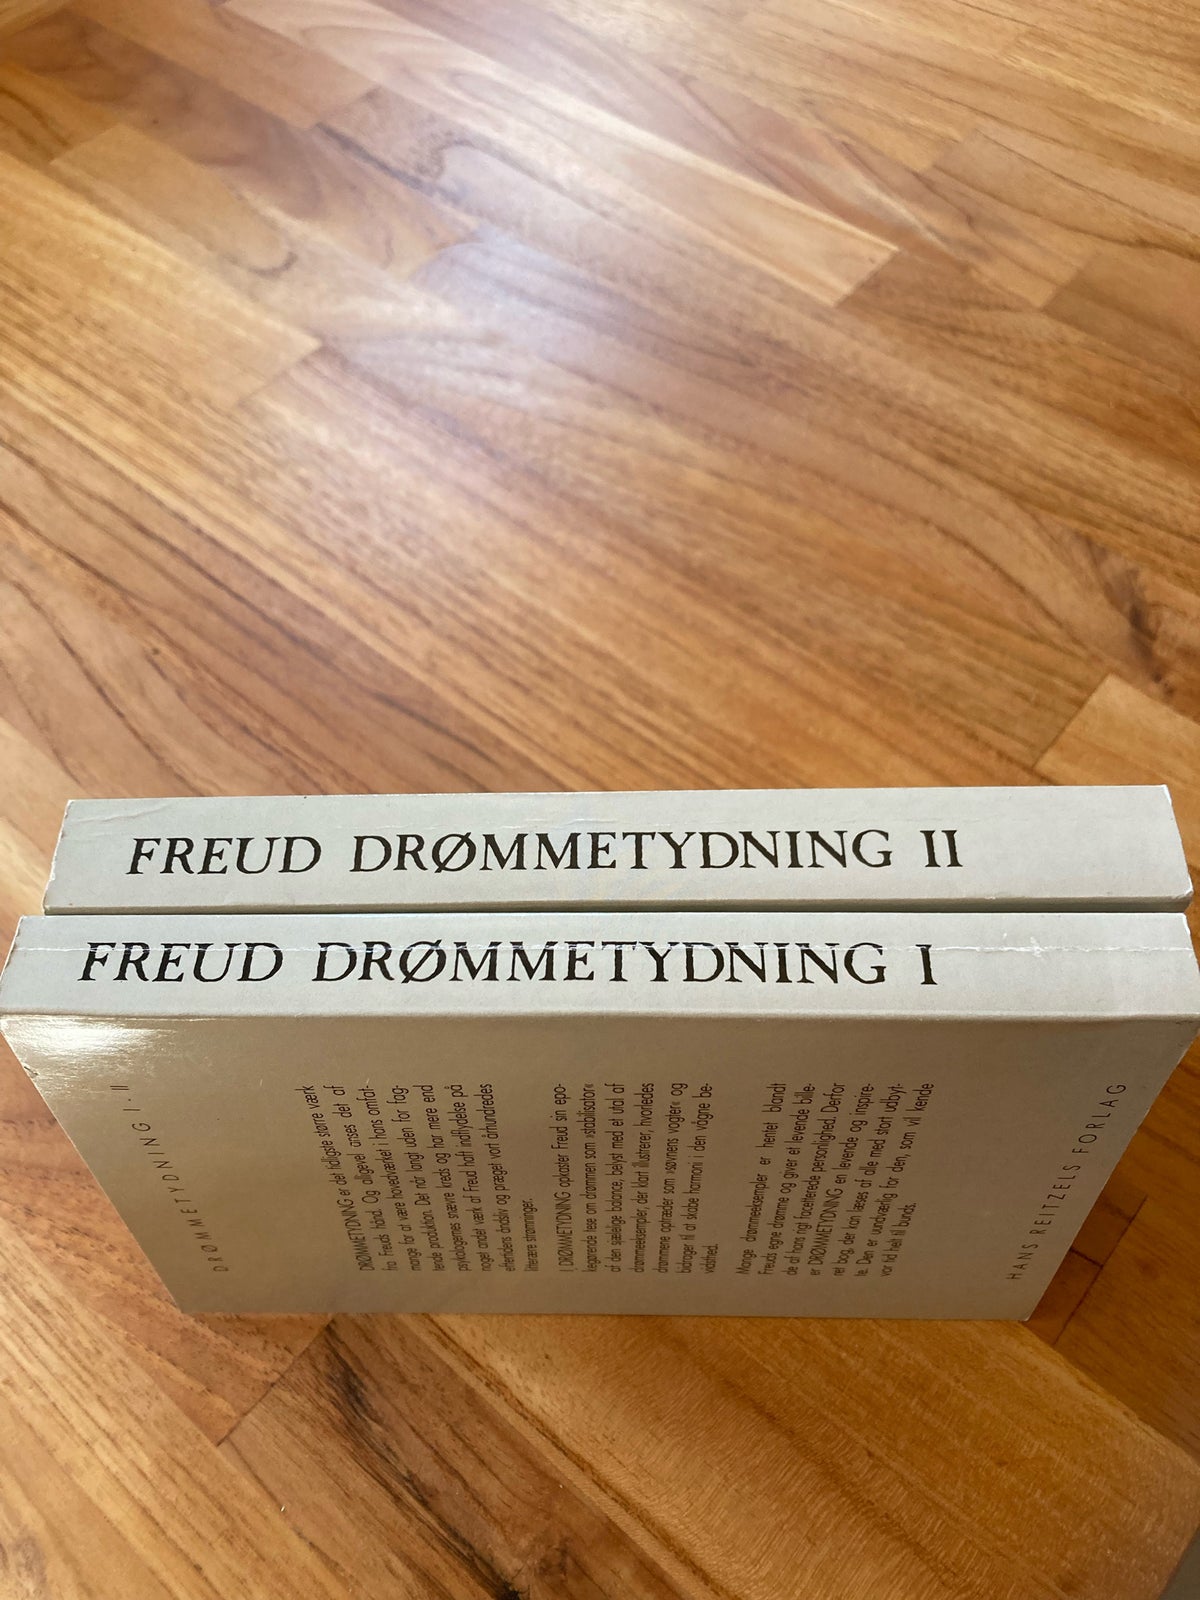 Drømmetydning I og Drømmetydning II, Sigmund Freud, emne: